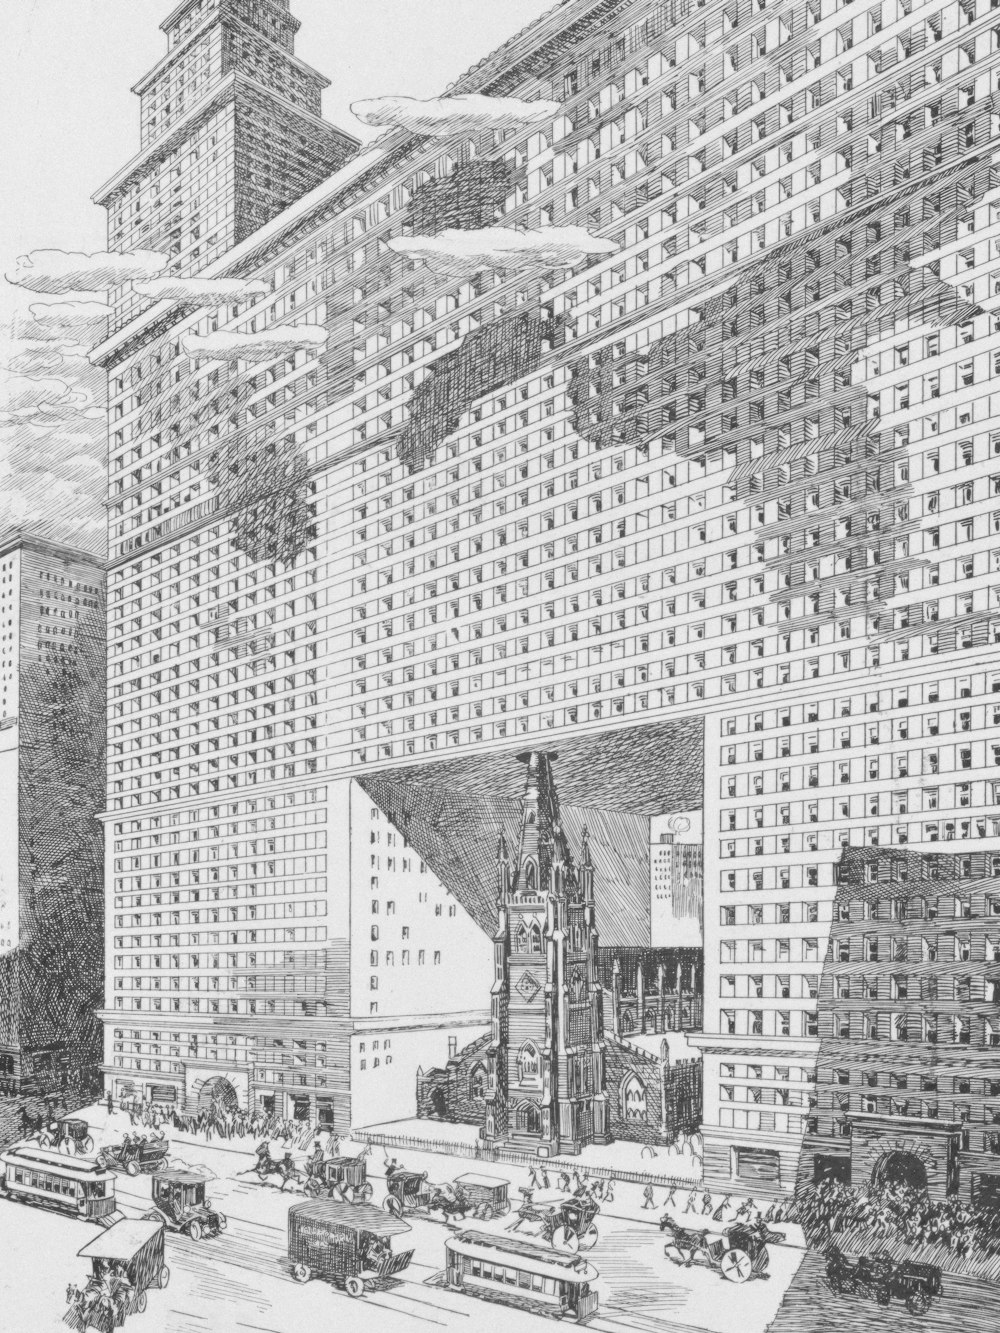 El futuro de la Iglesia de la Trinidad / Albert Levering. La ilustración muestra la iglesia de la Trinidad en la ciudad de Nueva York, completamente engullida por un edificio masivo, incluso por encima del campanario y el techo